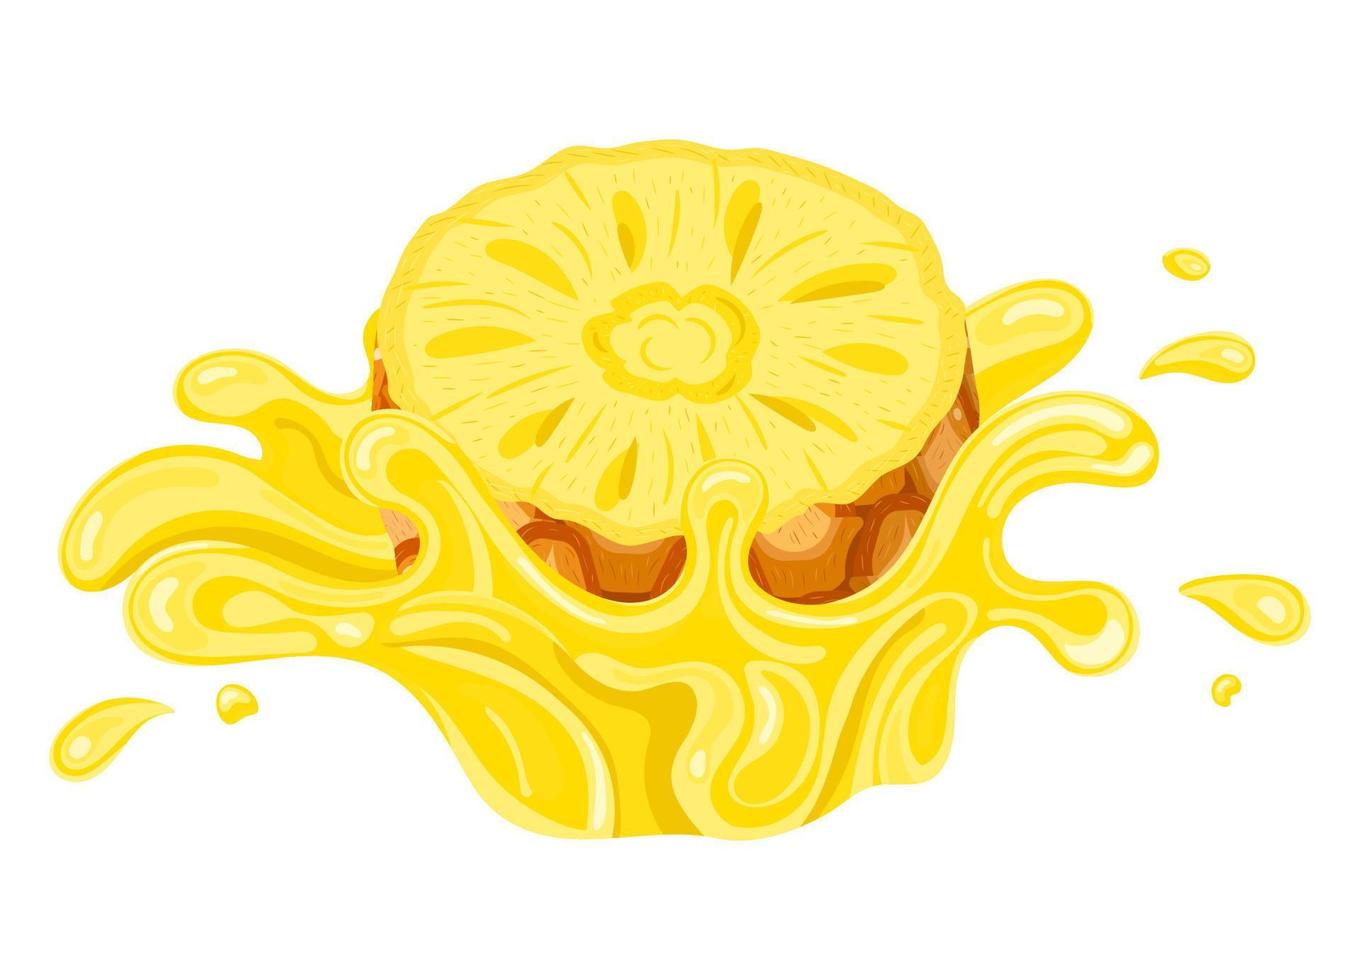 explosión de salpicaduras de jugo amarillo de piña fresca aislada en fondo blanco. jugo de frutas de verano. ilustración vectorial para cualquier diseño. vector